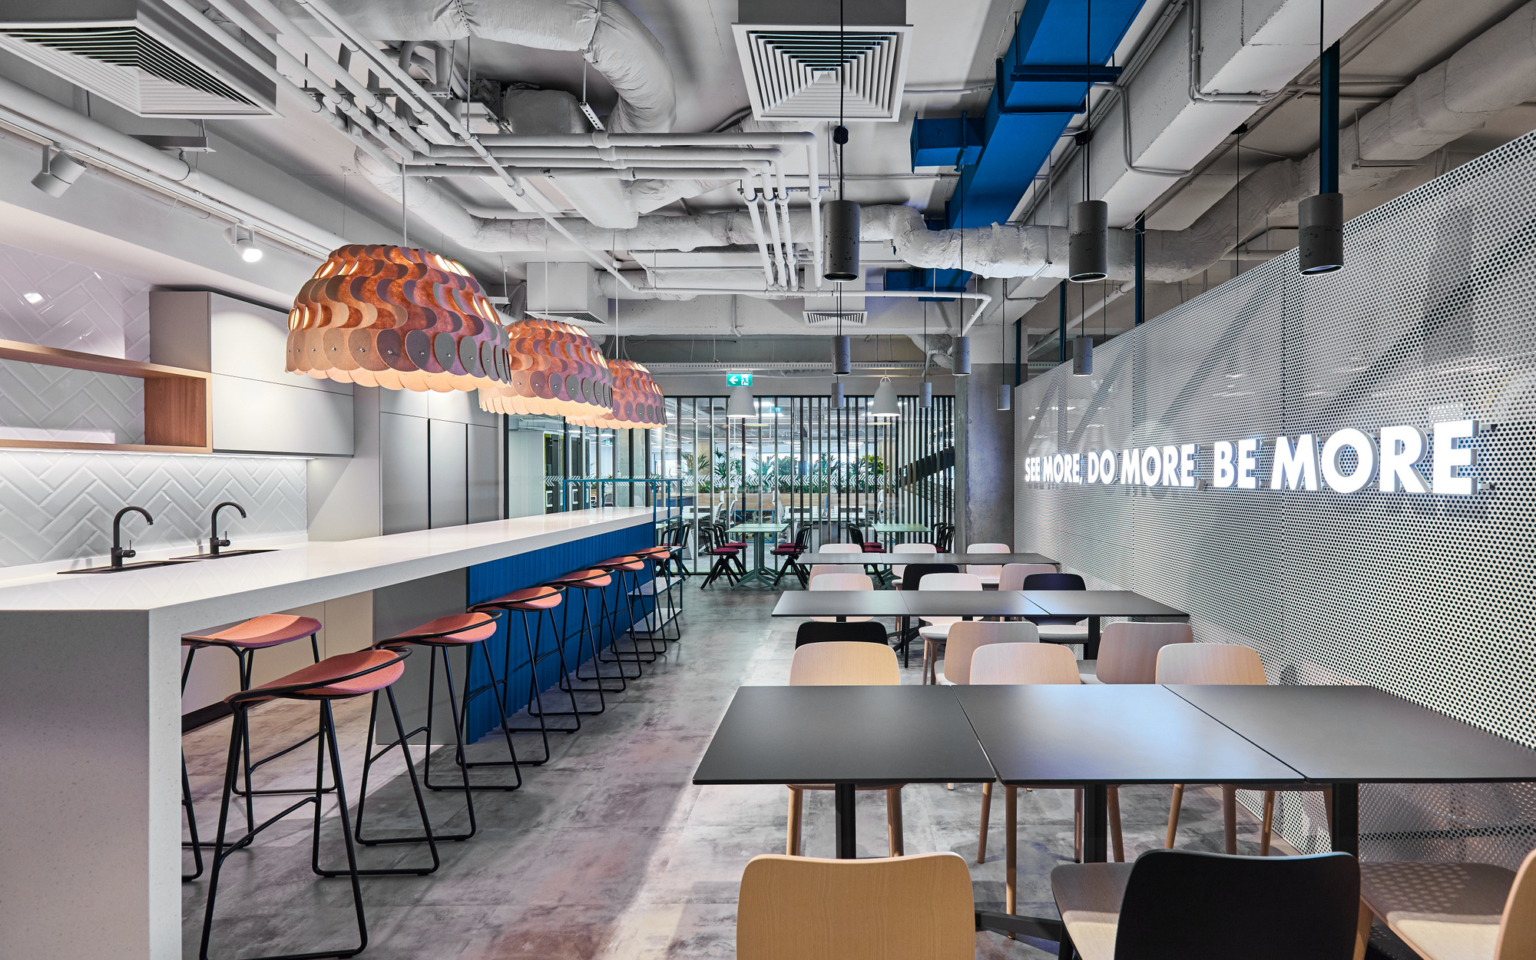 Accenture(アクセンチュア)のオフィス - ルーマニア、ブカレストのカフェスペース